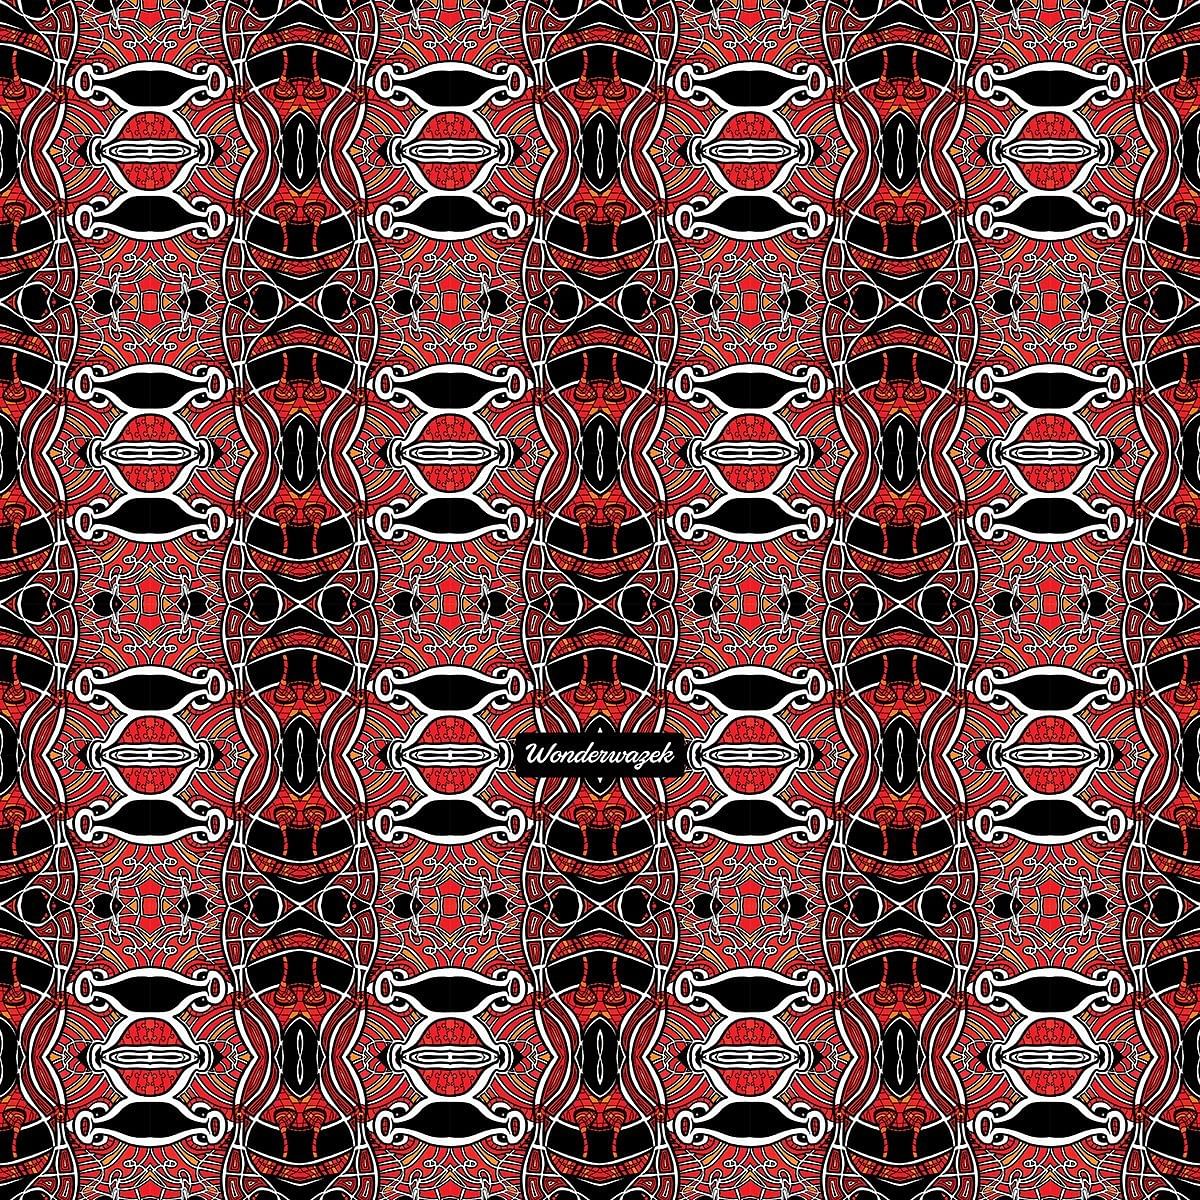 Strandtasche • Zirkus – Variation 1, rot, schwarz, weiß - Wonderwazek